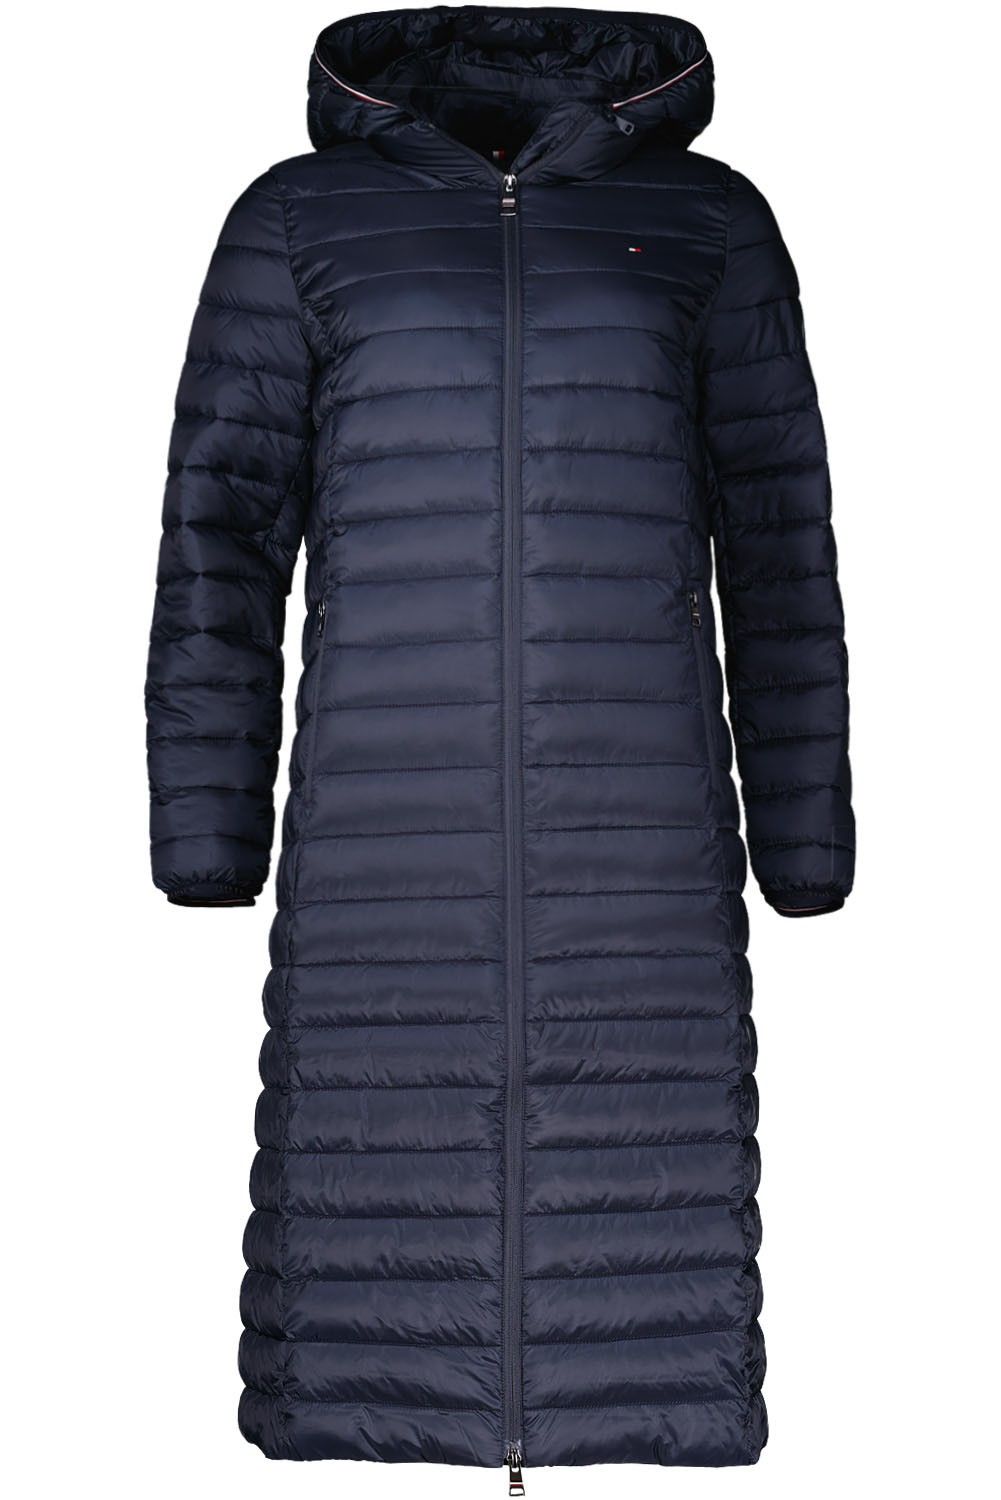 Aanvrager perspectief attent Tommy Hilfiger LW padded globel stripe coat Blauw Donsjassen - gewatteerde  jas | Gratis bezorging - Bomont.nl